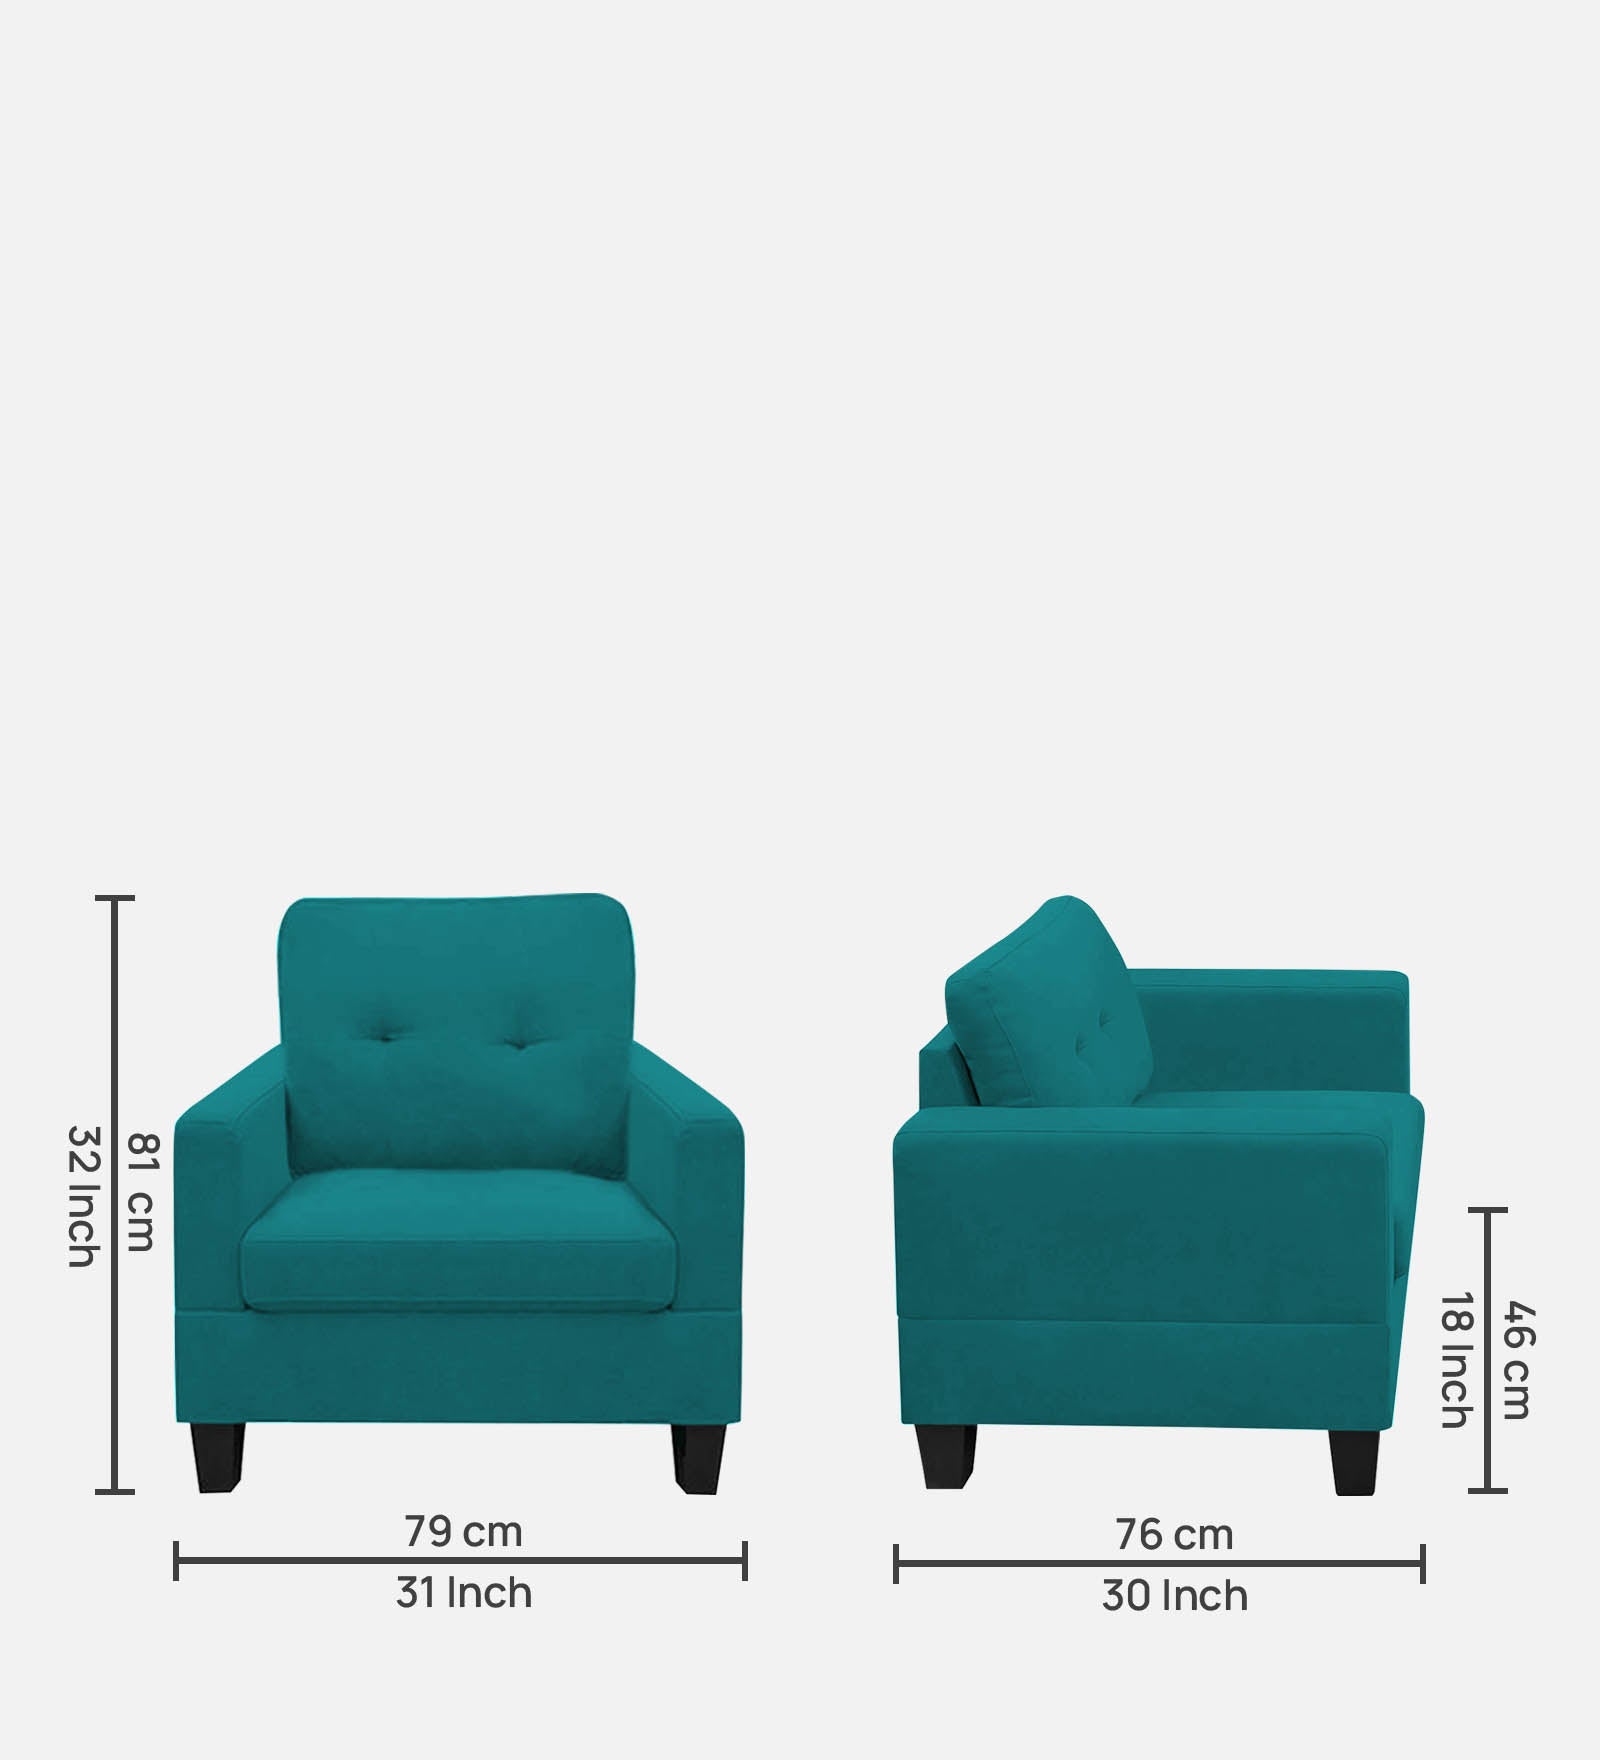 Thomas Fabric 1 Seater Sofa in Sea Green Colour